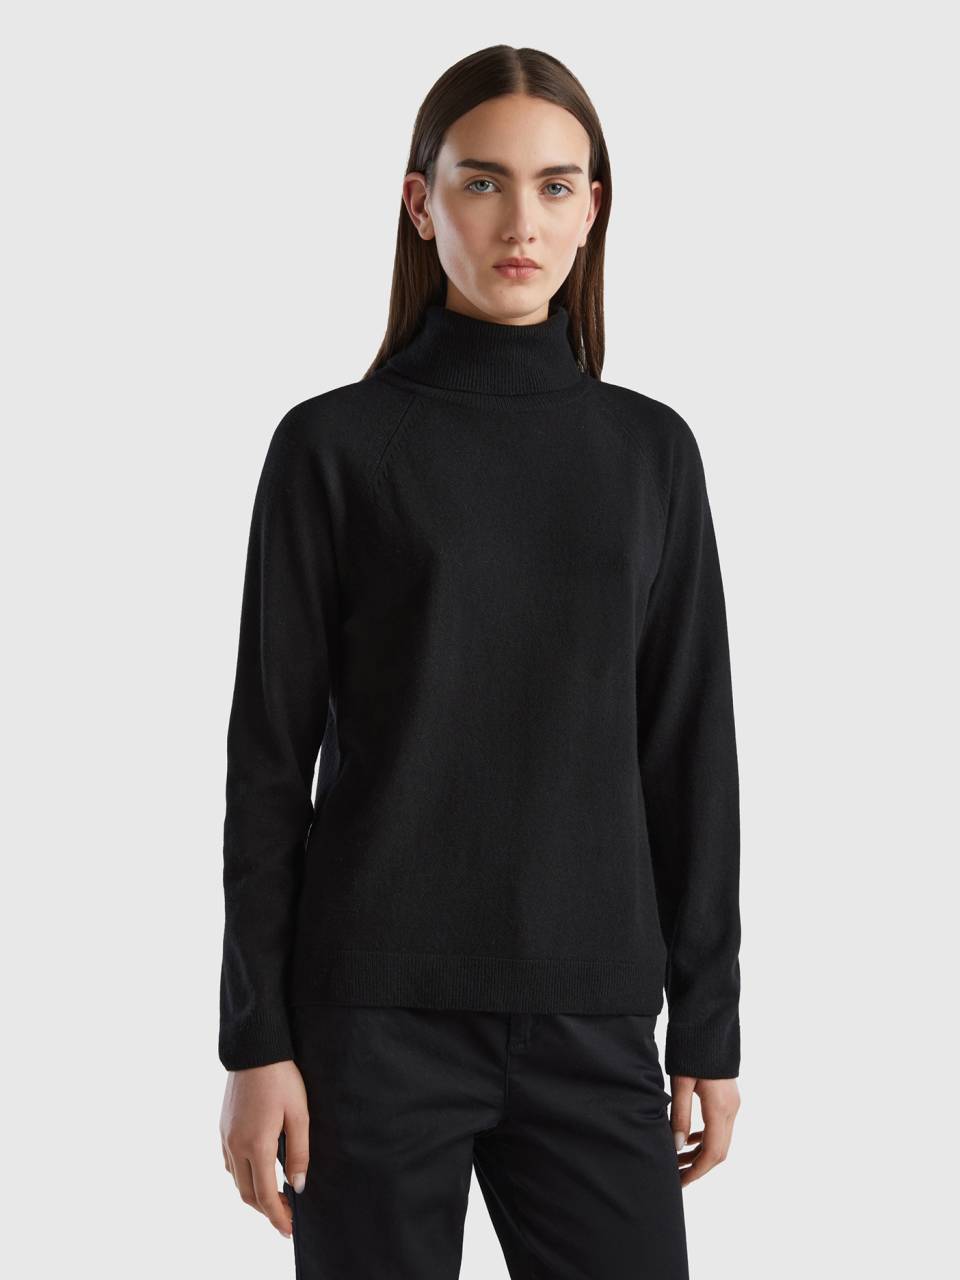 Buy Highlander Black Turtle Neck Sweater for Men Online at Rs.779 - Ketch